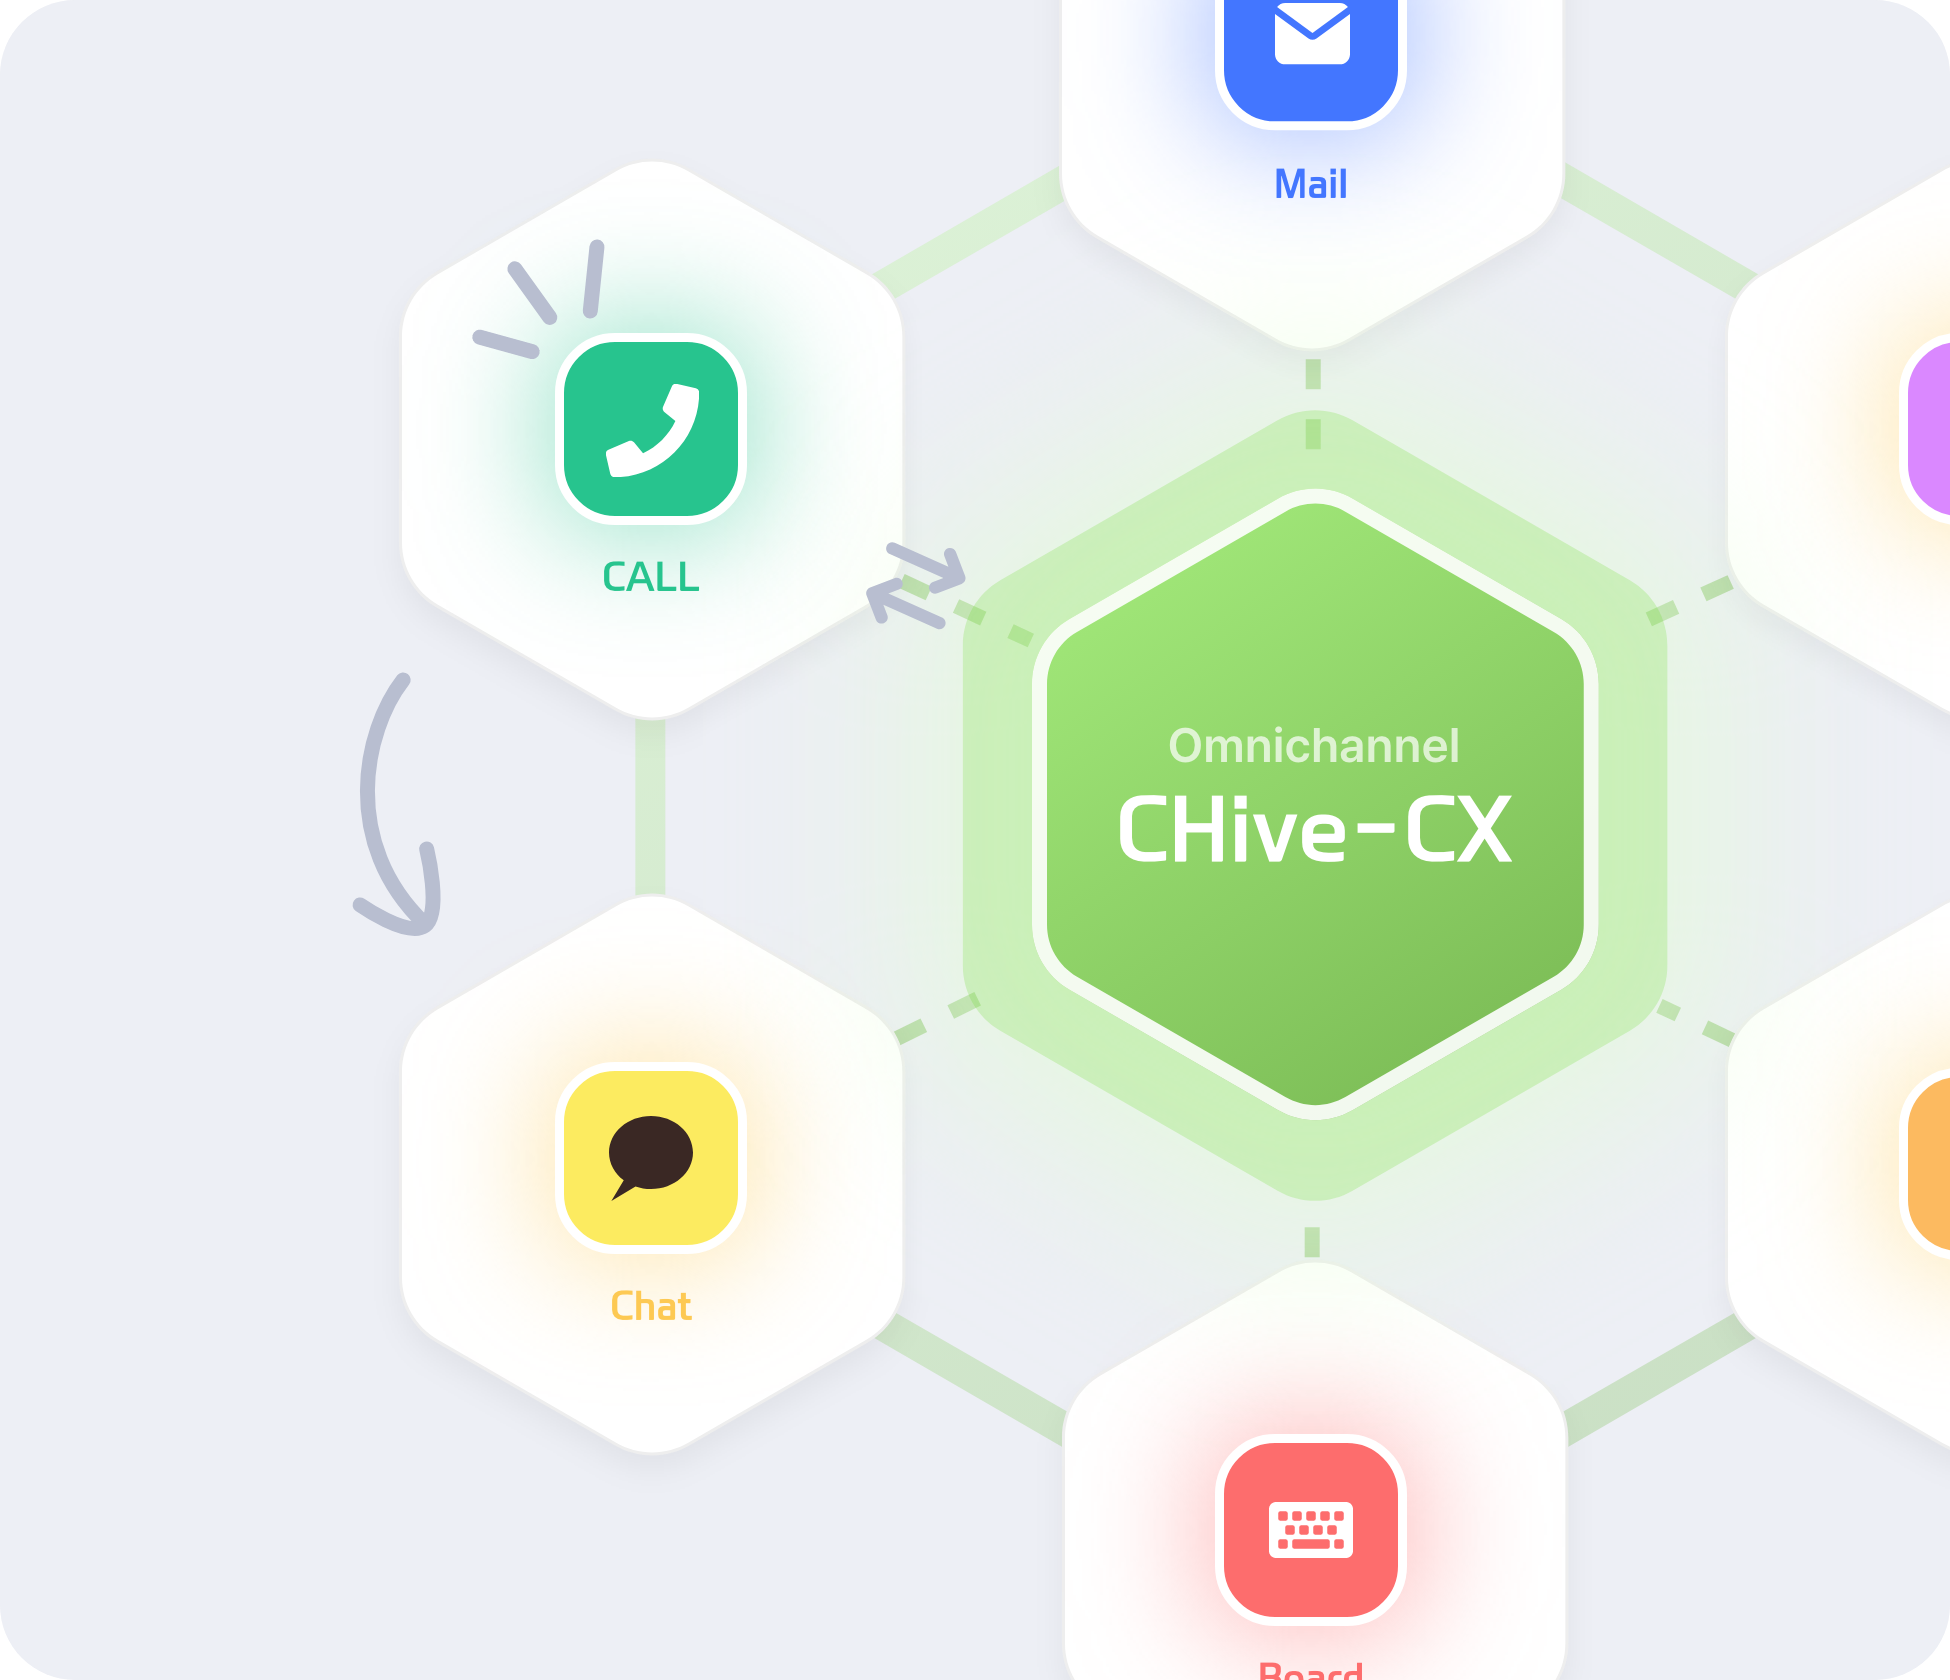 옴니채널 CHive-CX 전화,채팅,이메일,게시판 등 여러채널로 연결